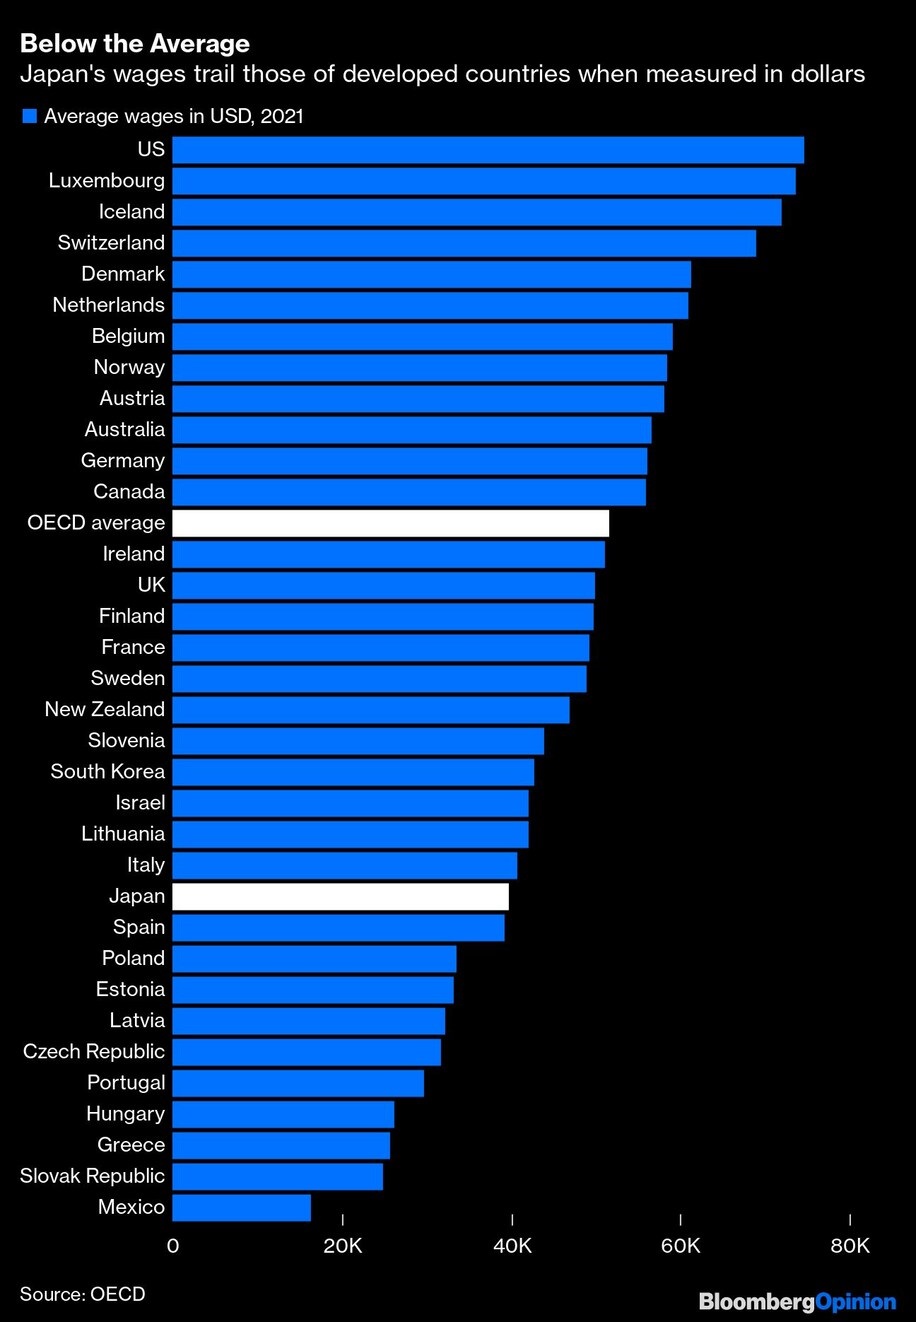 Lương trung bình tính theo USD tại Nhật Bản thấp hơn so với rất nhiều nước. Nguồn: Bloomberg